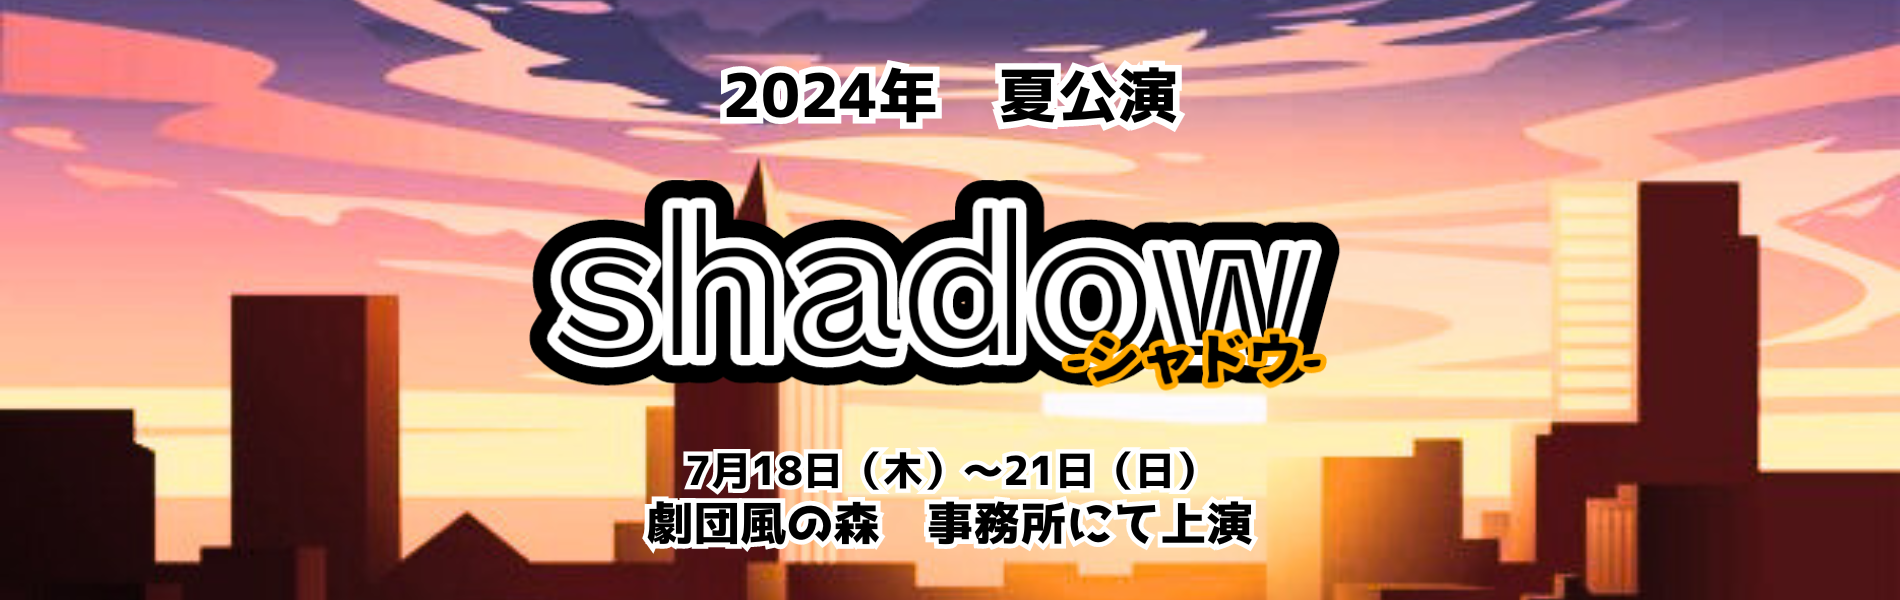 2024年夏公演【Shadow】